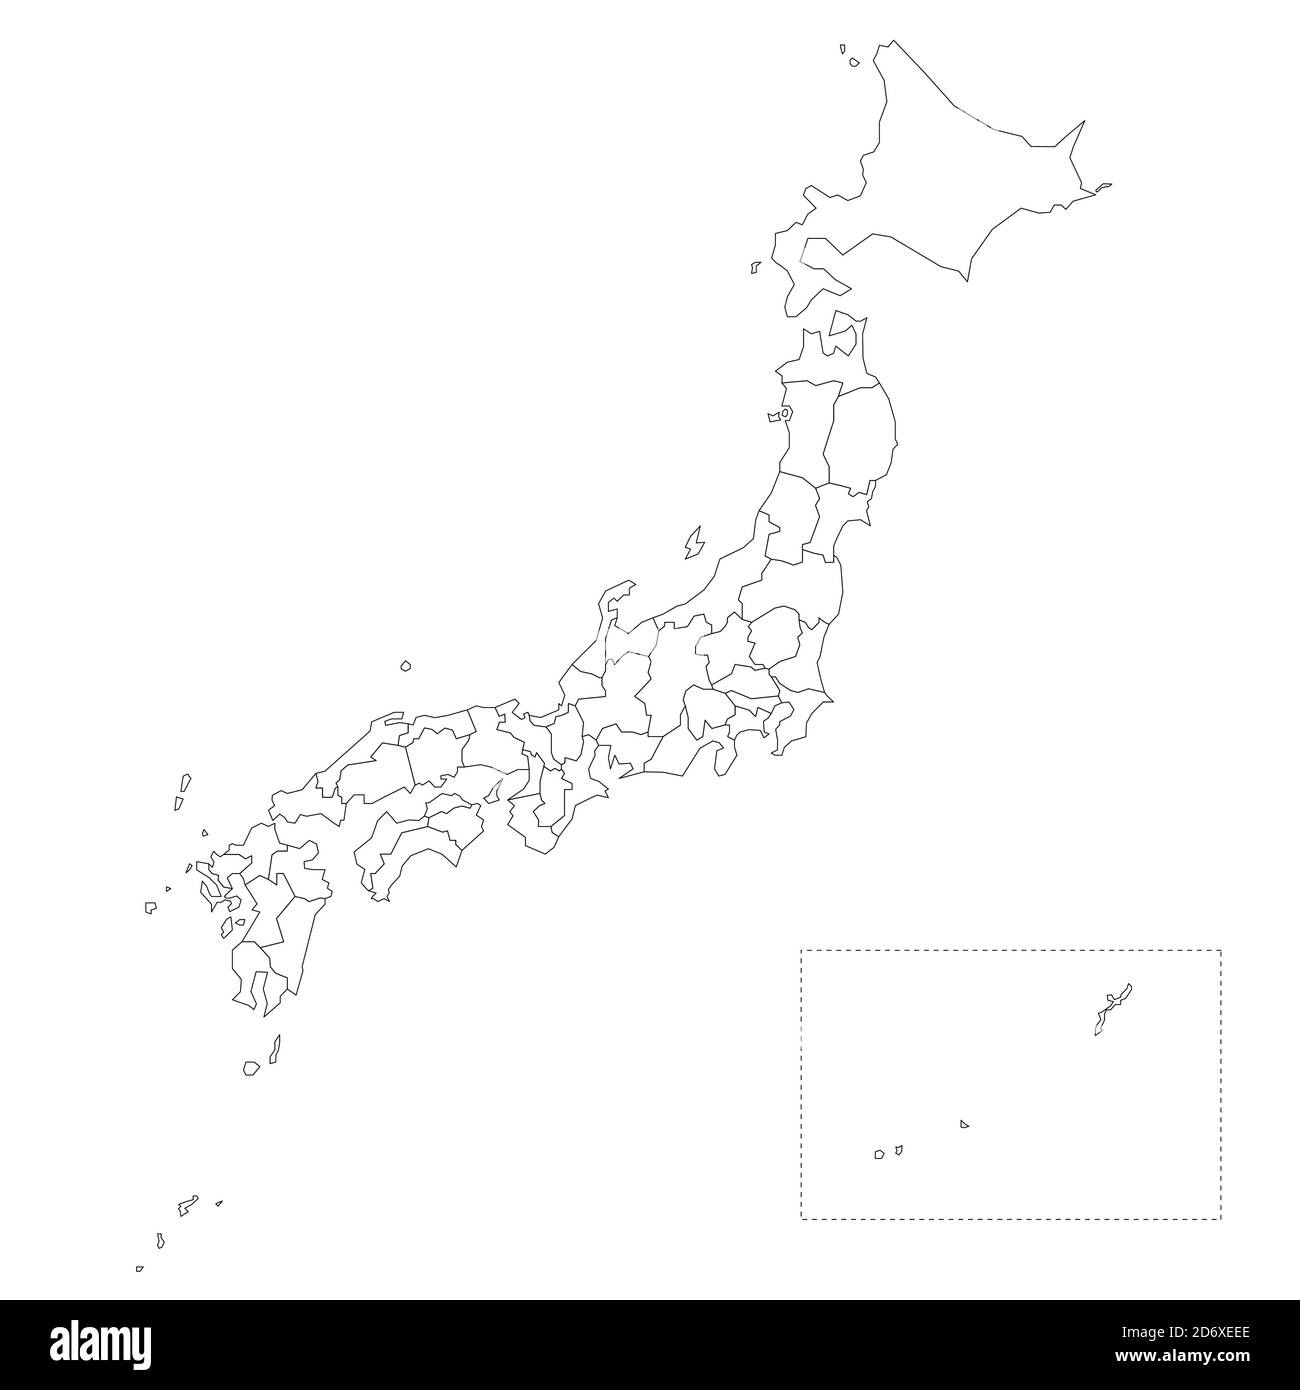 Leere politische Landkarte von Japan. Verwaltungsabteilungen - Präfekturen. Einfache Vektorkarte mit schwarzer Kontur. Stock Vektor